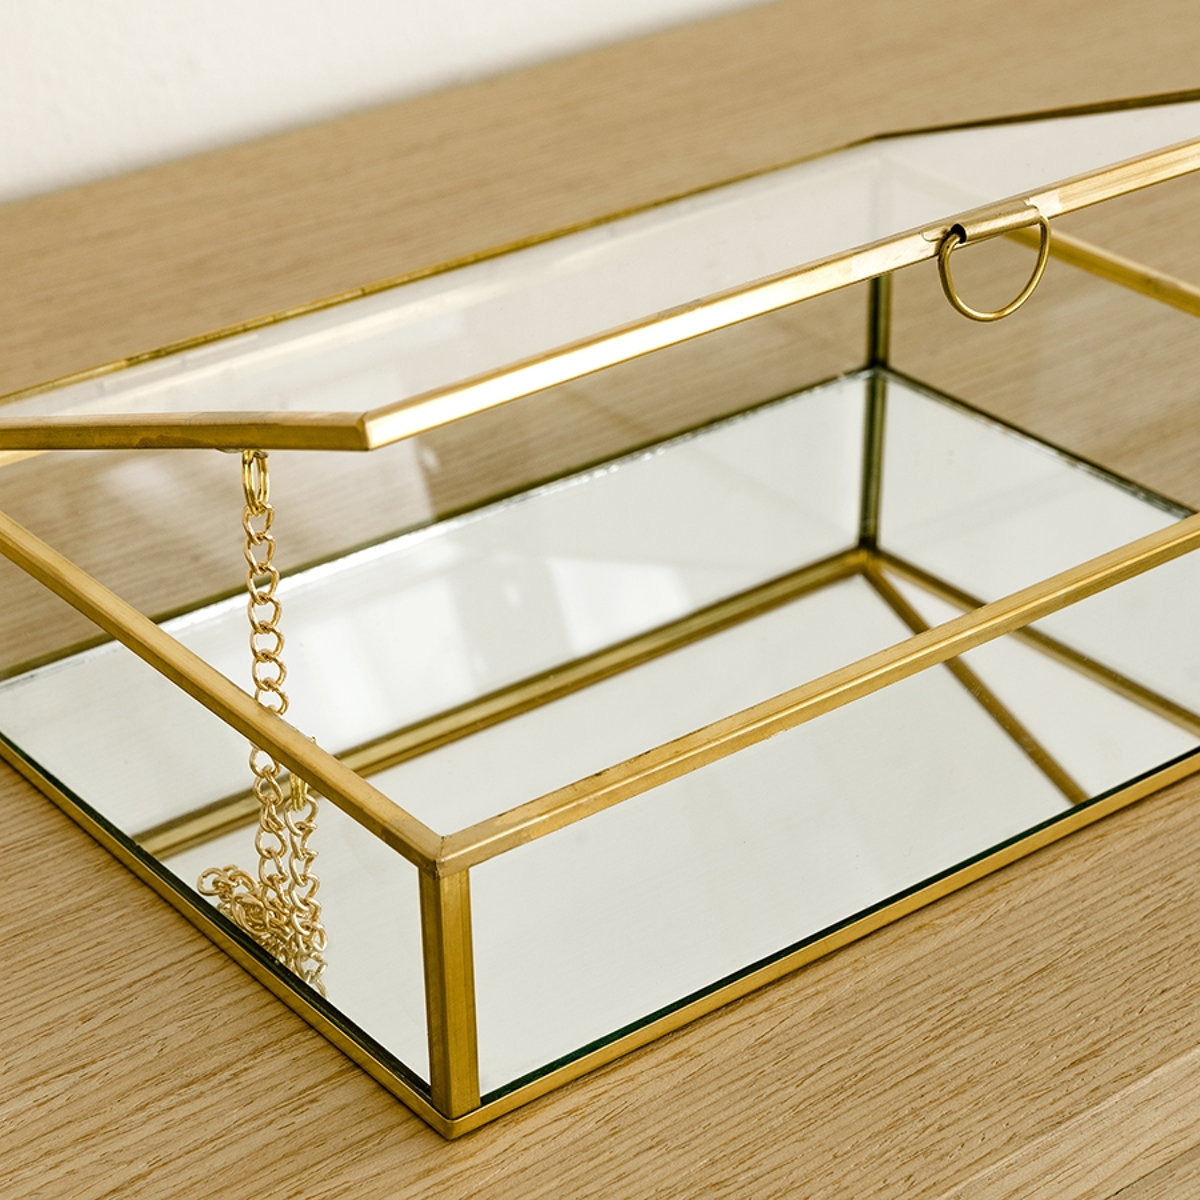 Glass caja dorada